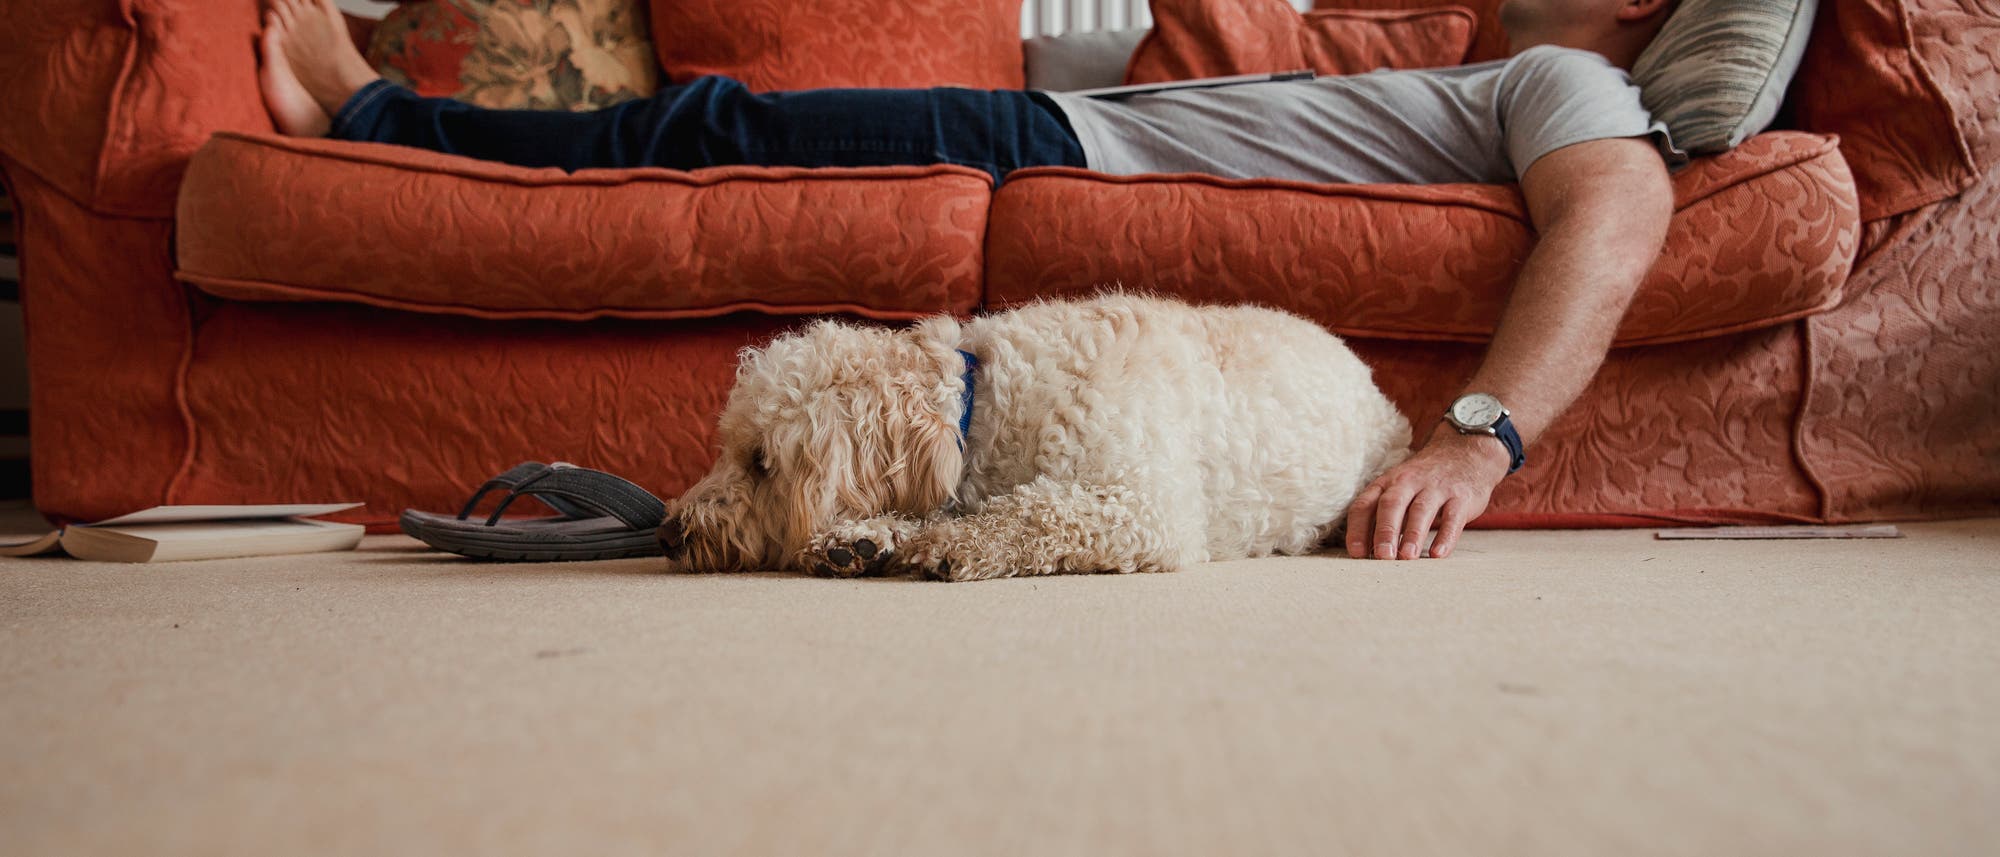 Schlafender Mann auf Sofa mit Hund davor